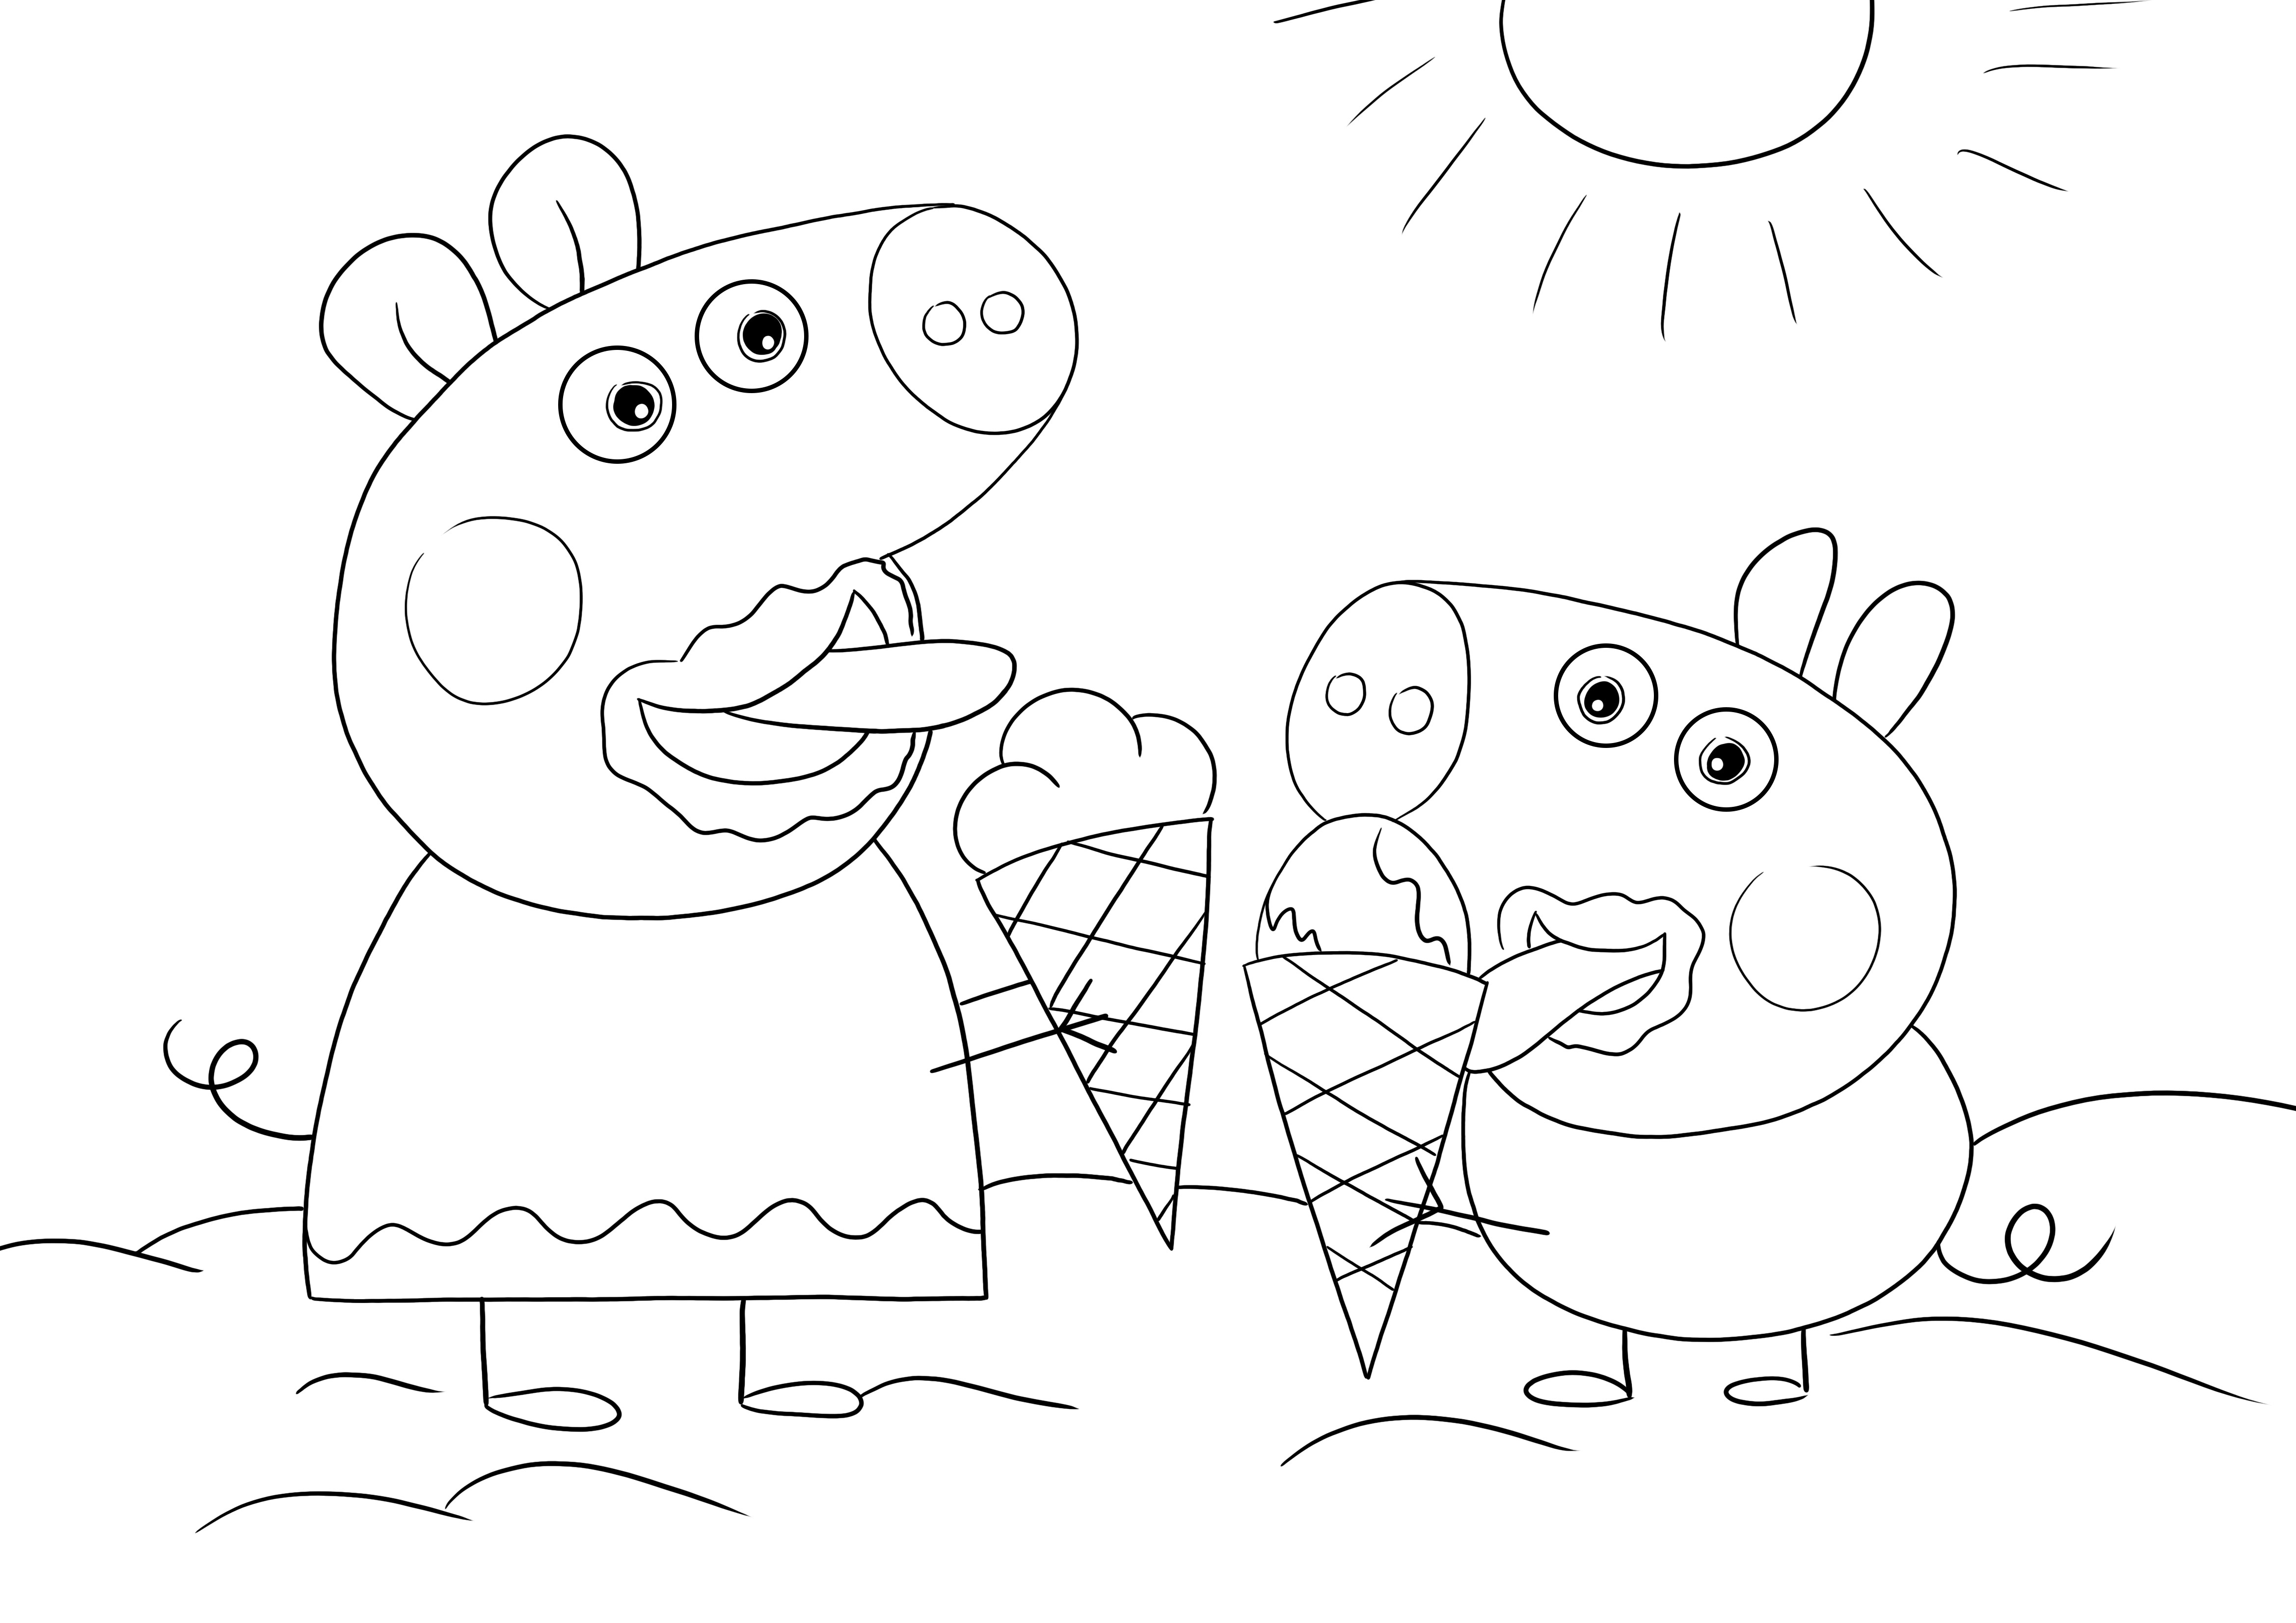 Peppa dan George makan es krim untuk diwarnai atau diunduh secara gratis